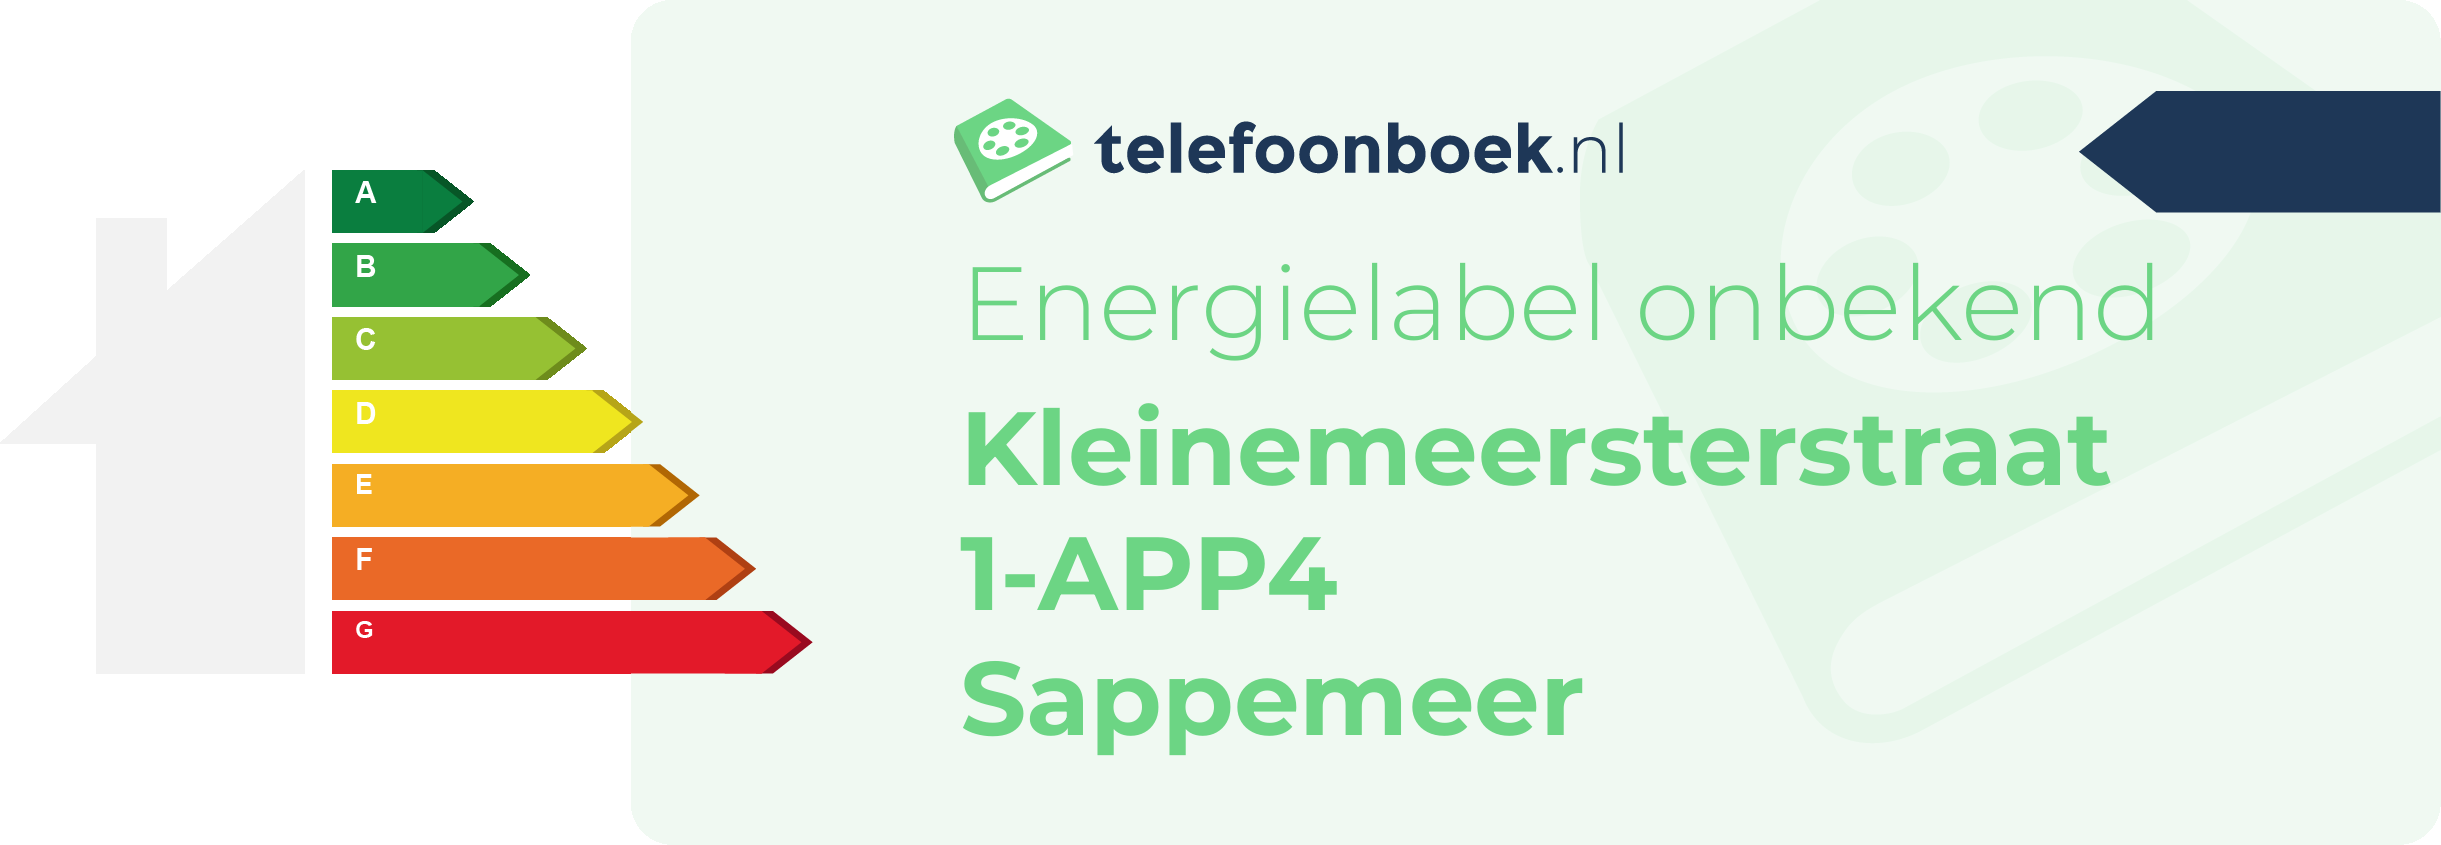 Energielabel Kleinemeersterstraat 1-APP4 Sappemeer